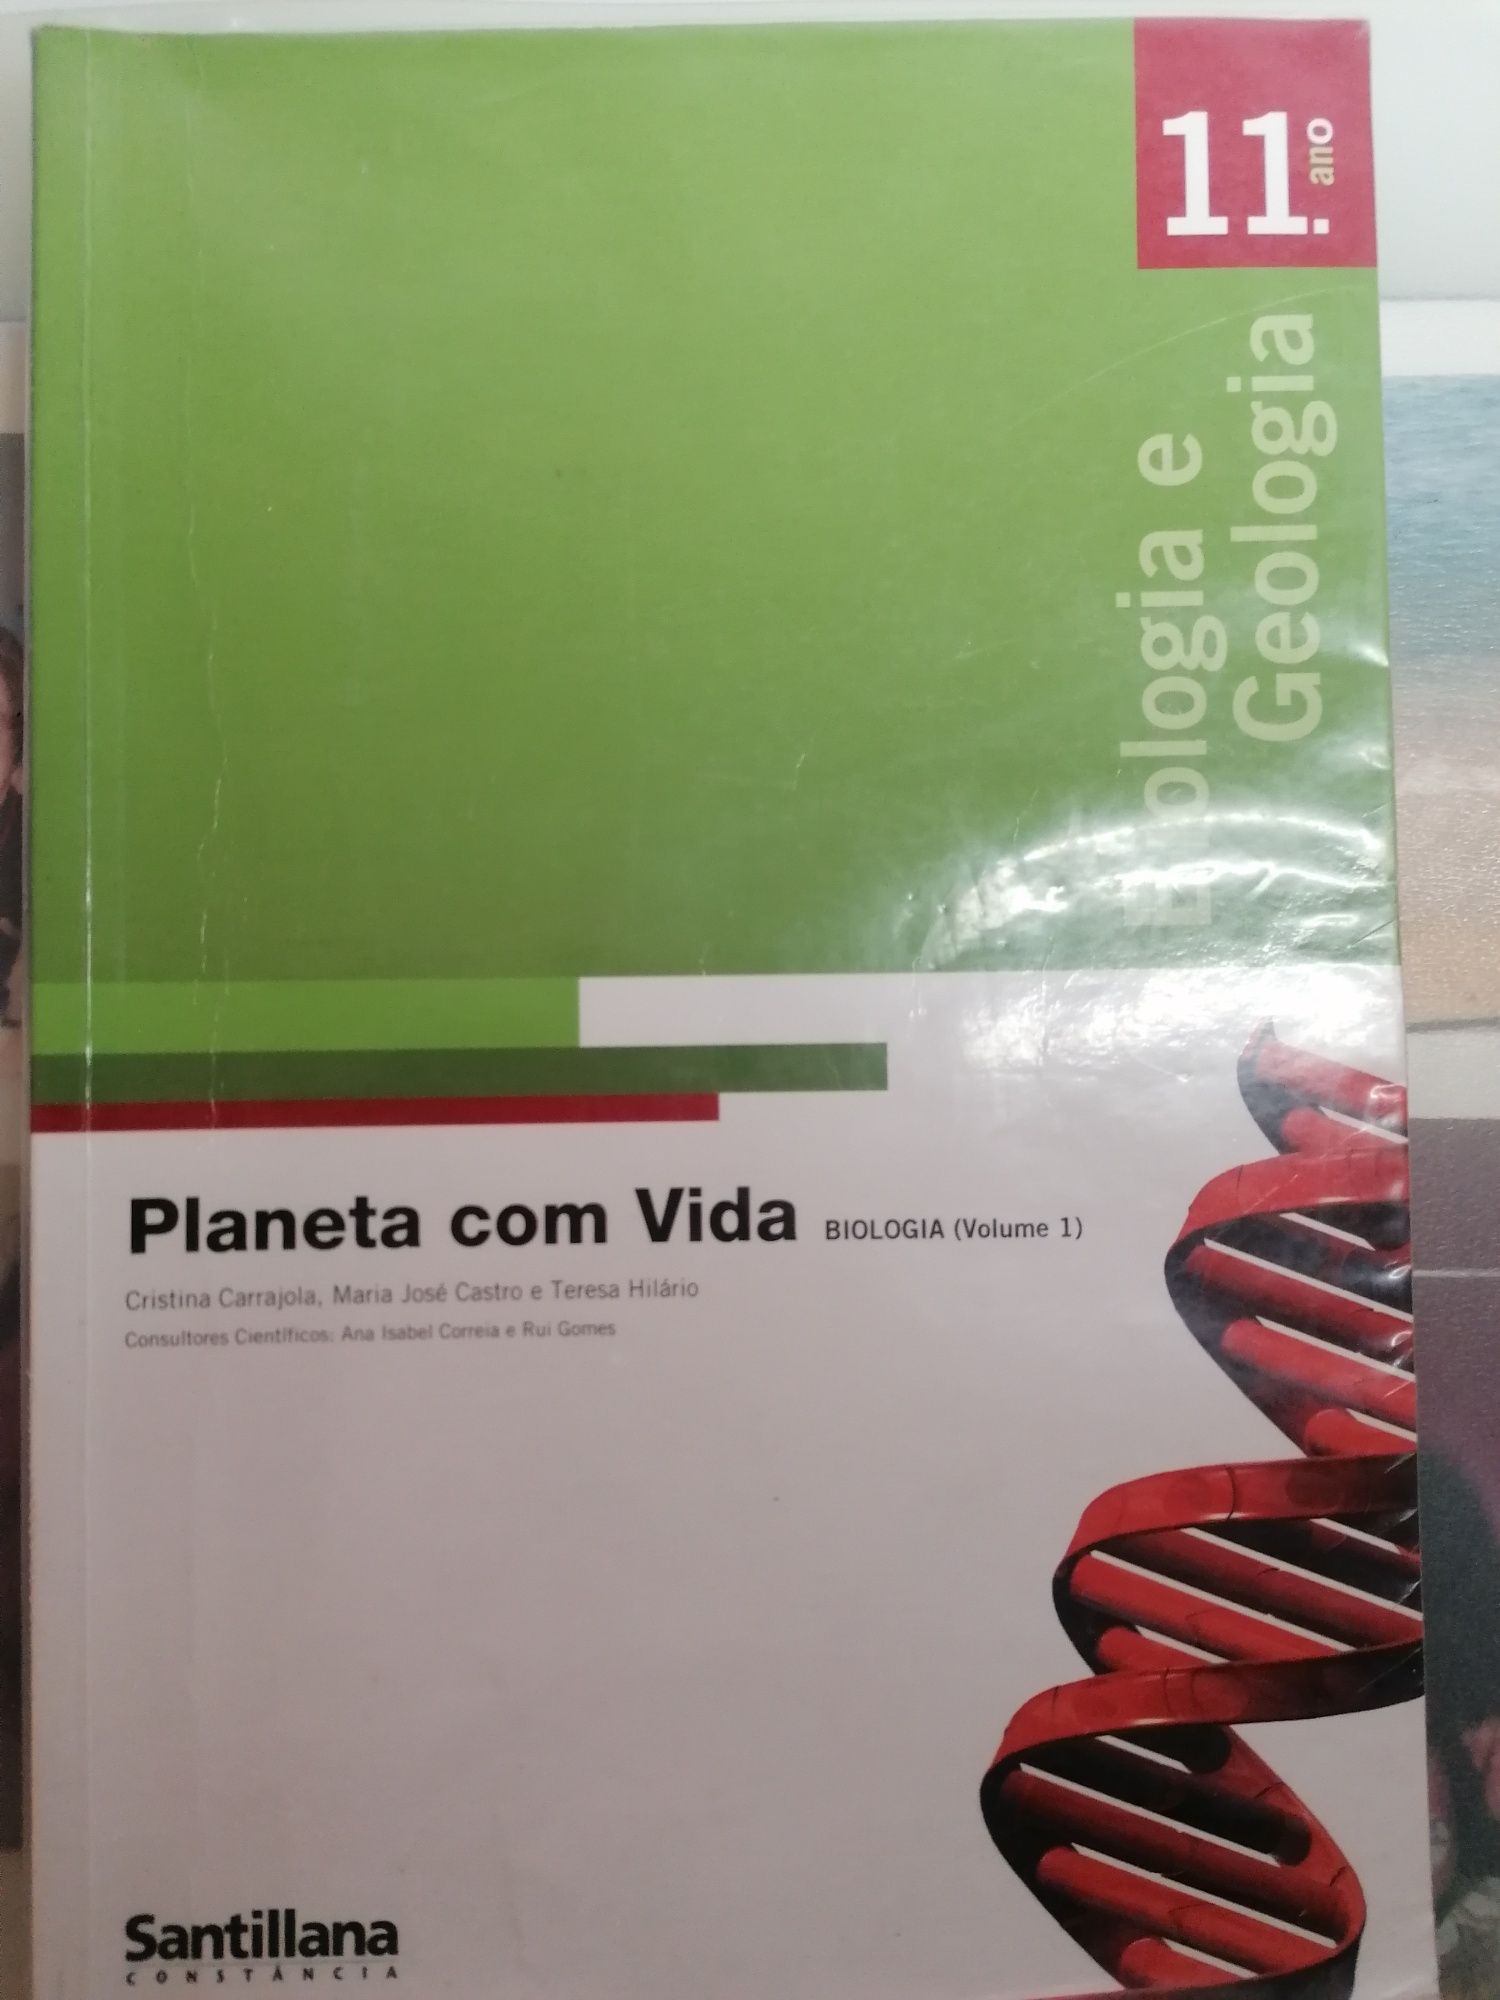 Conjunto de livros: Planeta com Vida, Biologia e Geologia